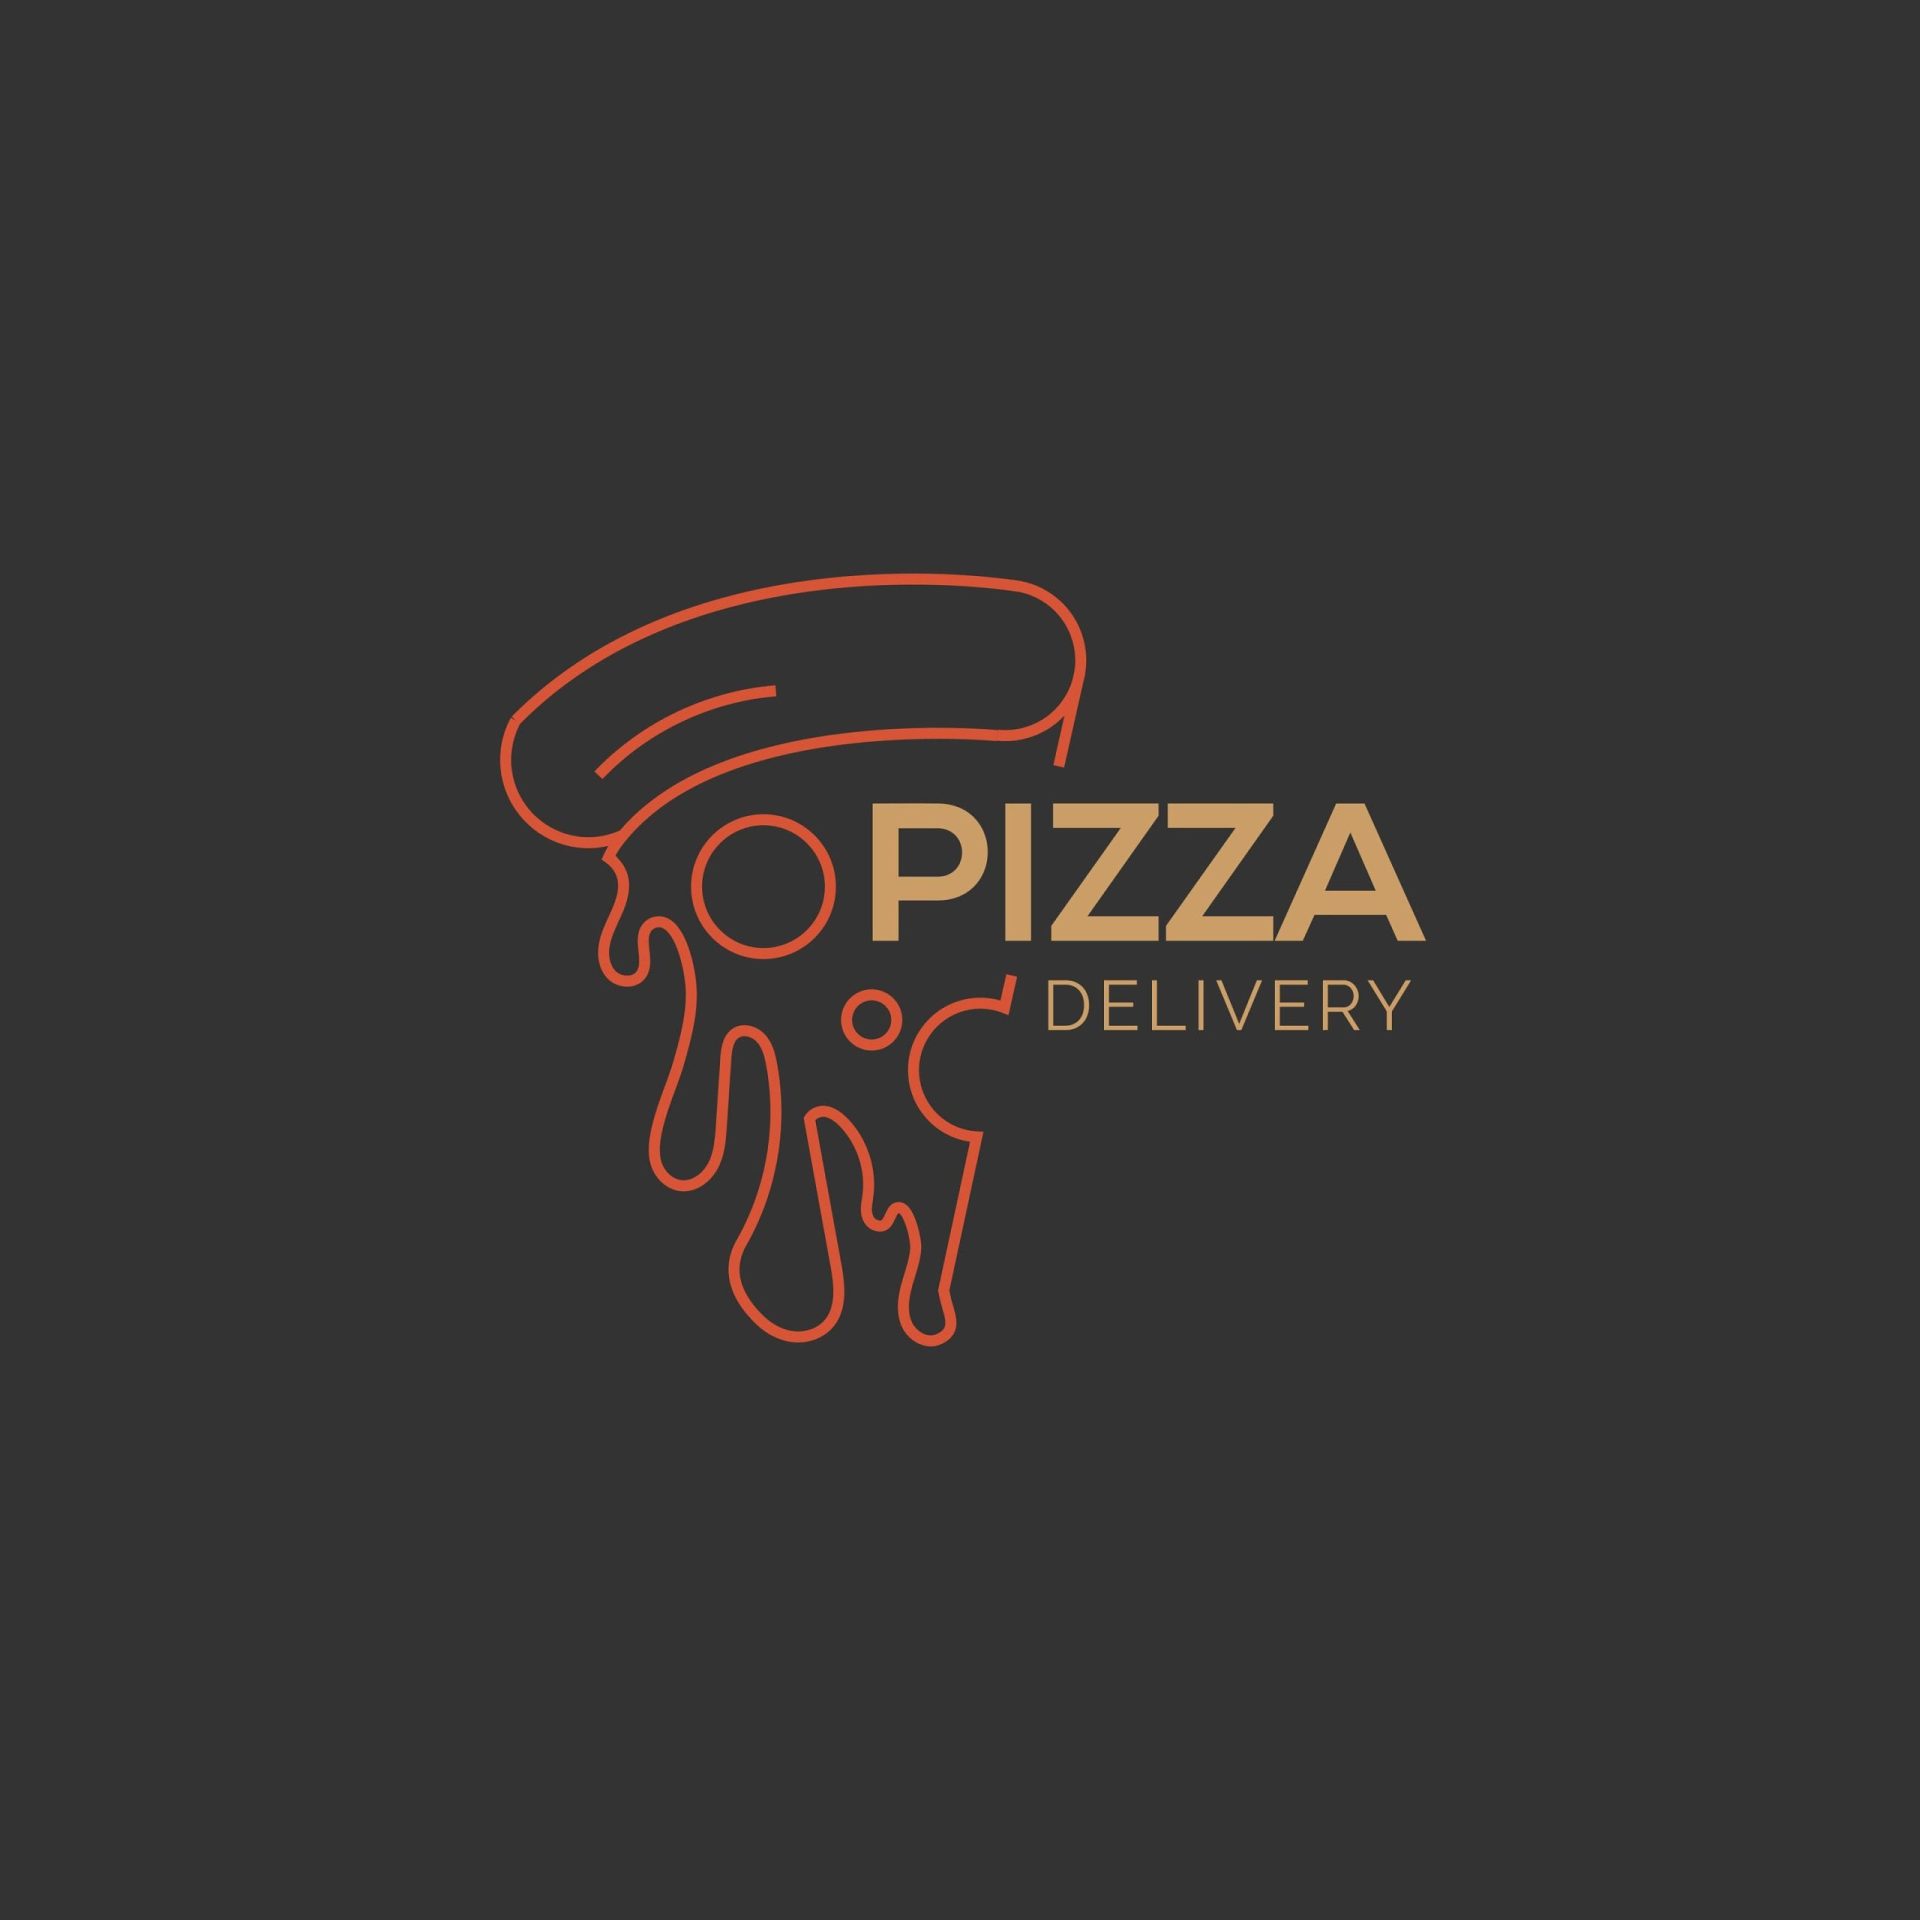 pizzeria logo ideas 9